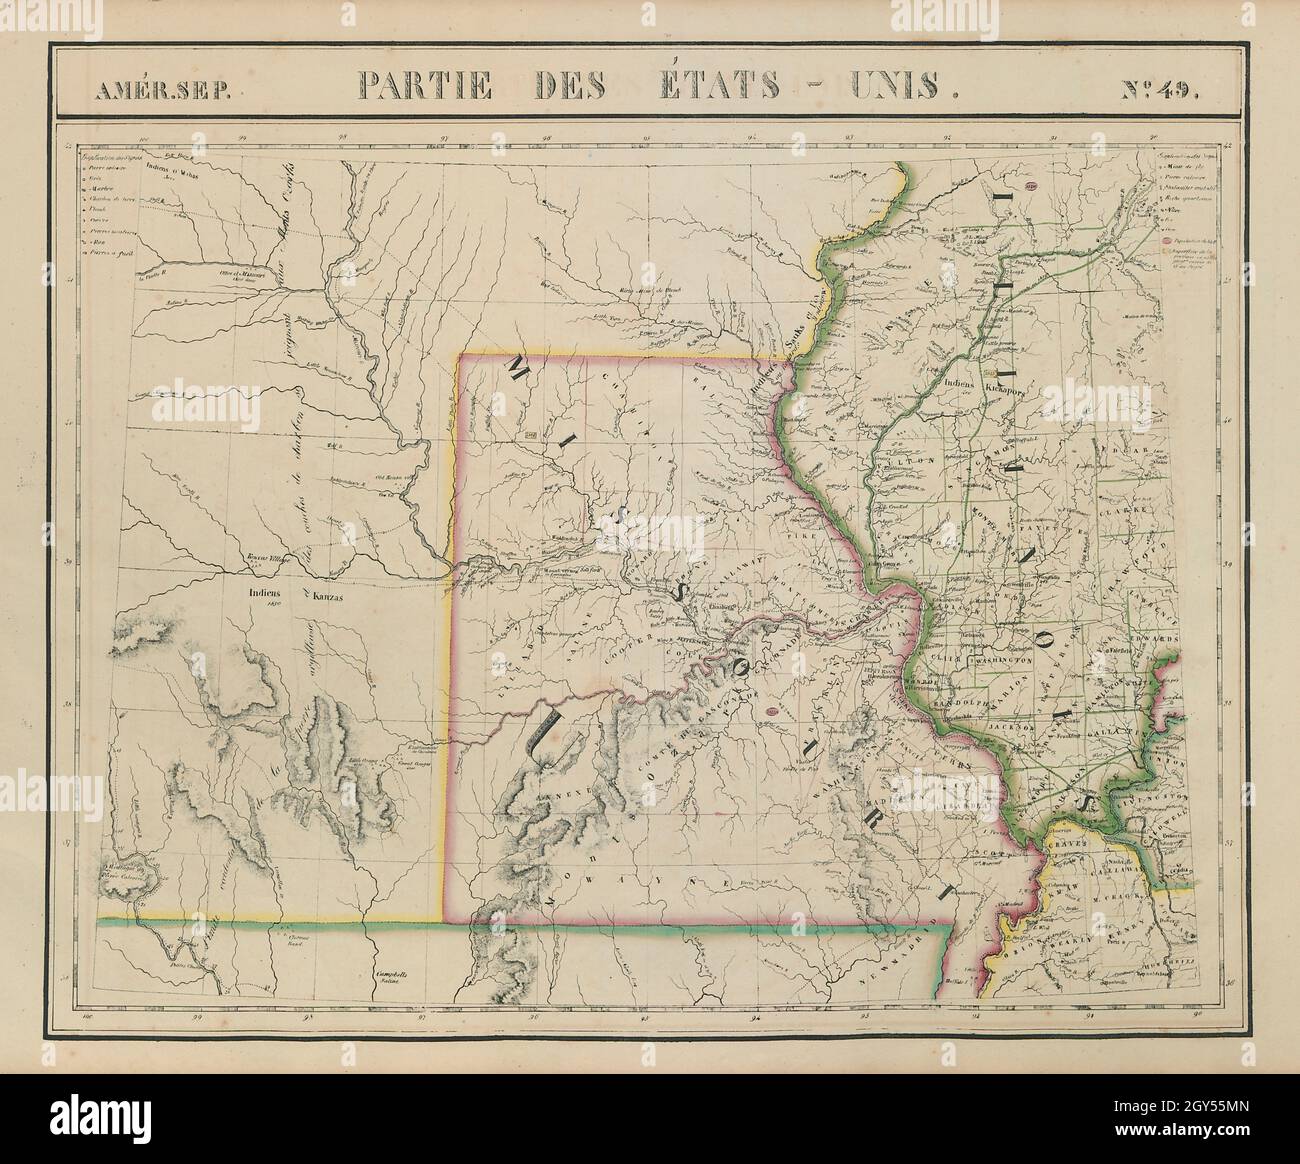 Amér. Settembre Parties des États-Unis #49. Missouri, Illinois. Mappa VANDERMAELEN 1827 Foto Stock